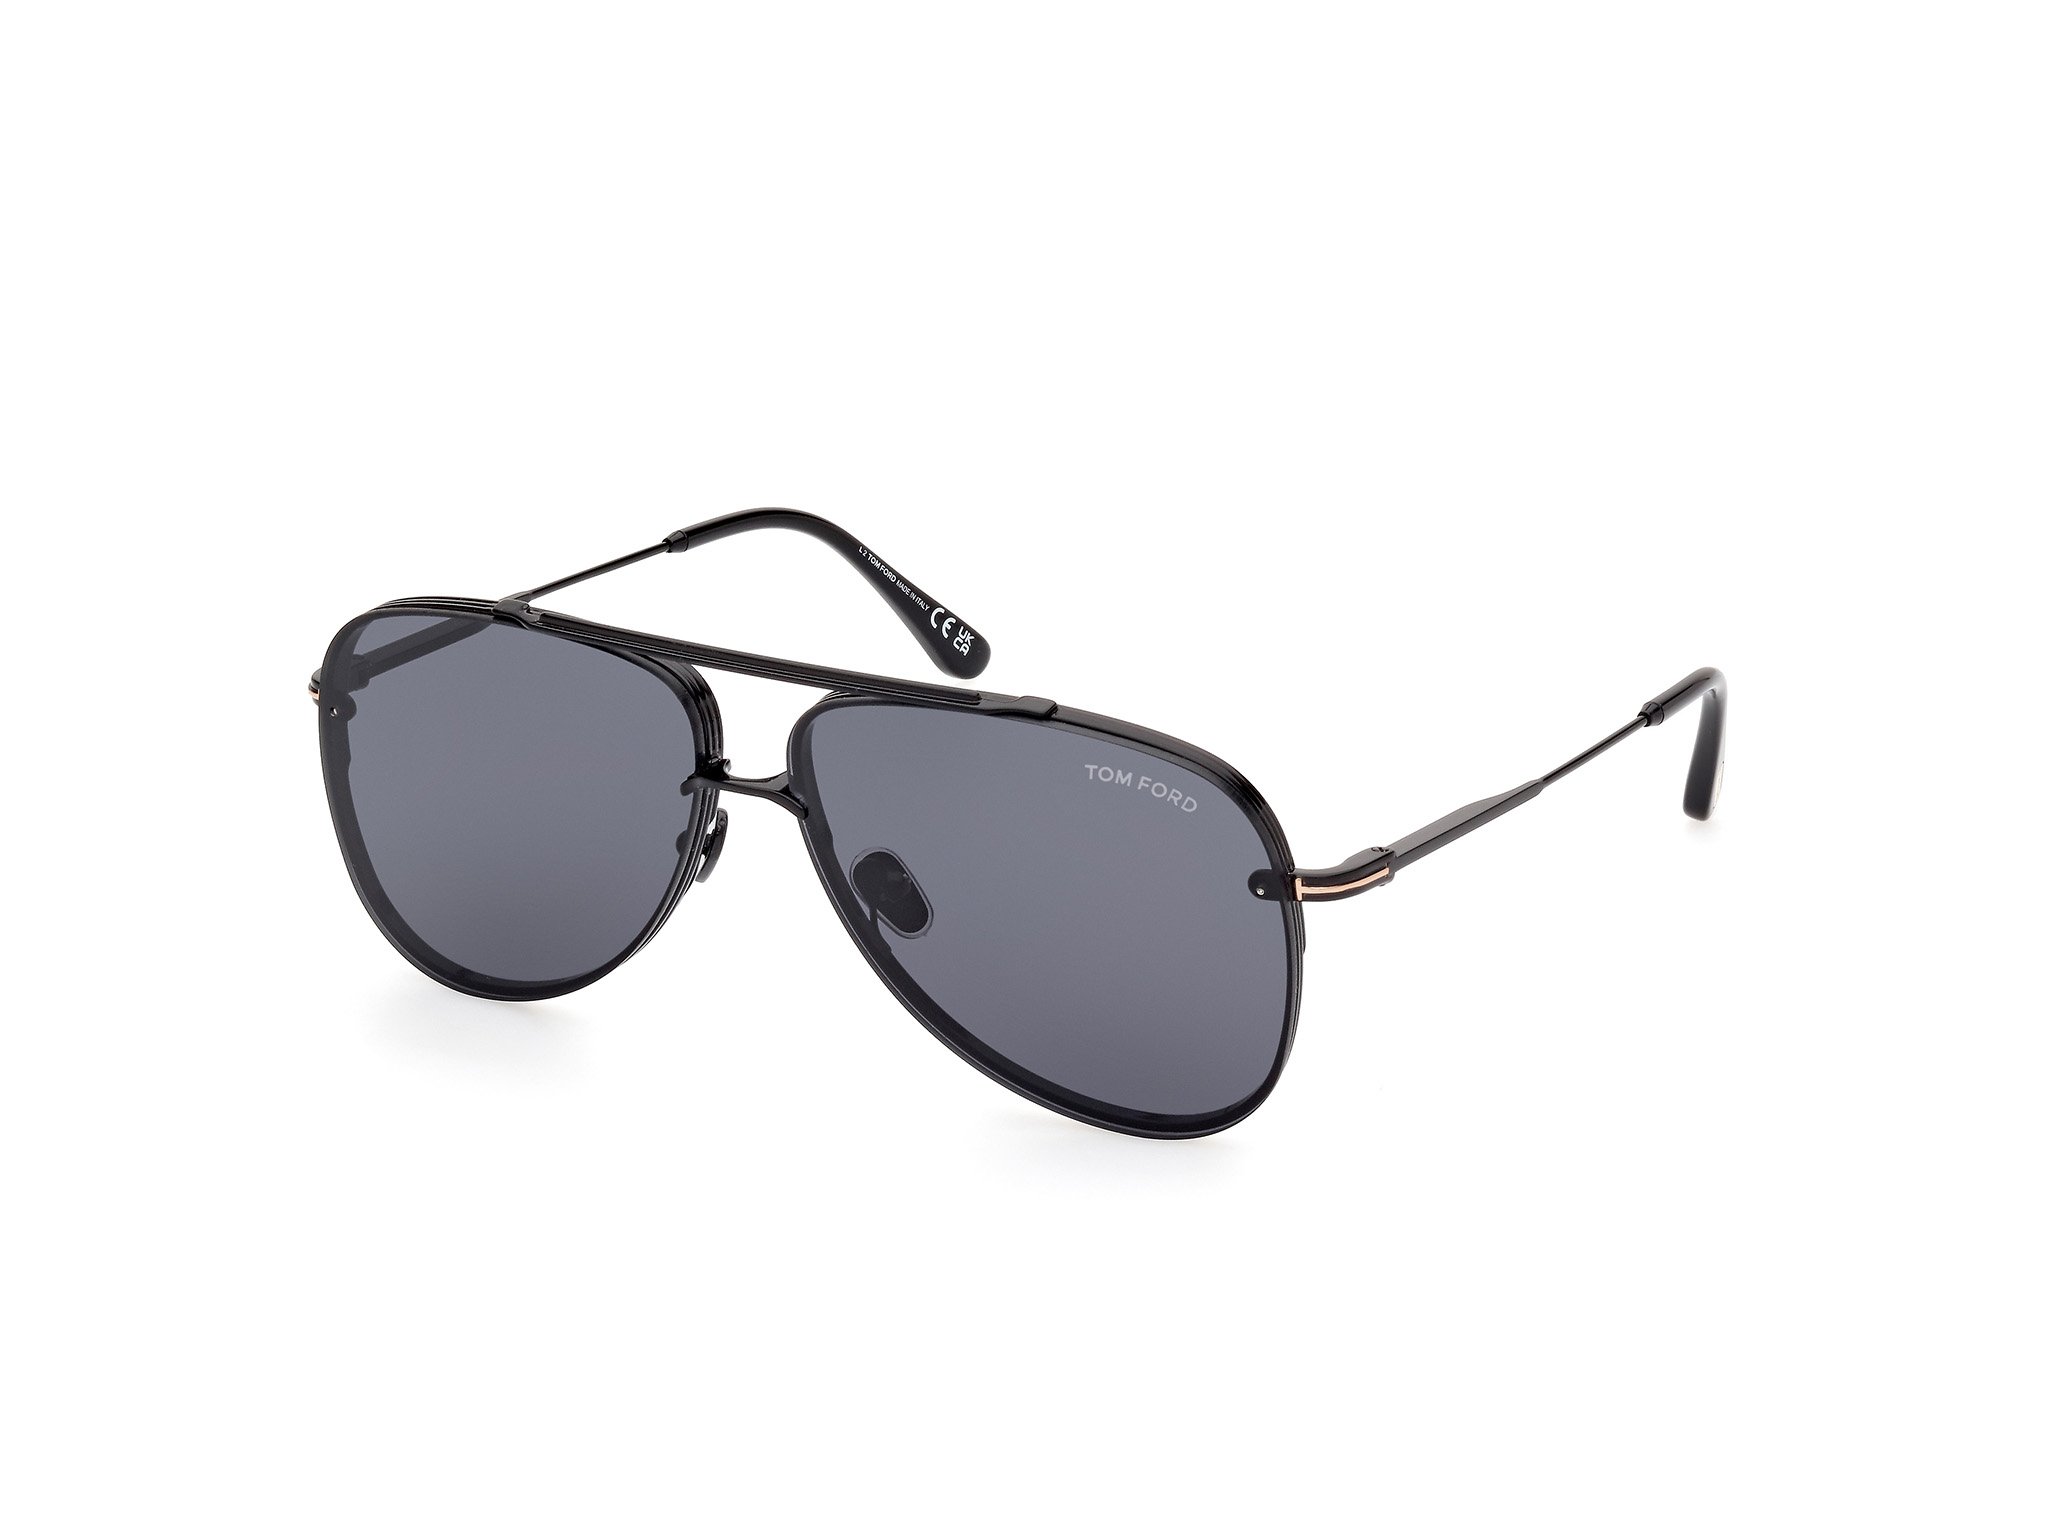  Tom Ford Sonnenbrille Leon in schwarz FT1071 01A